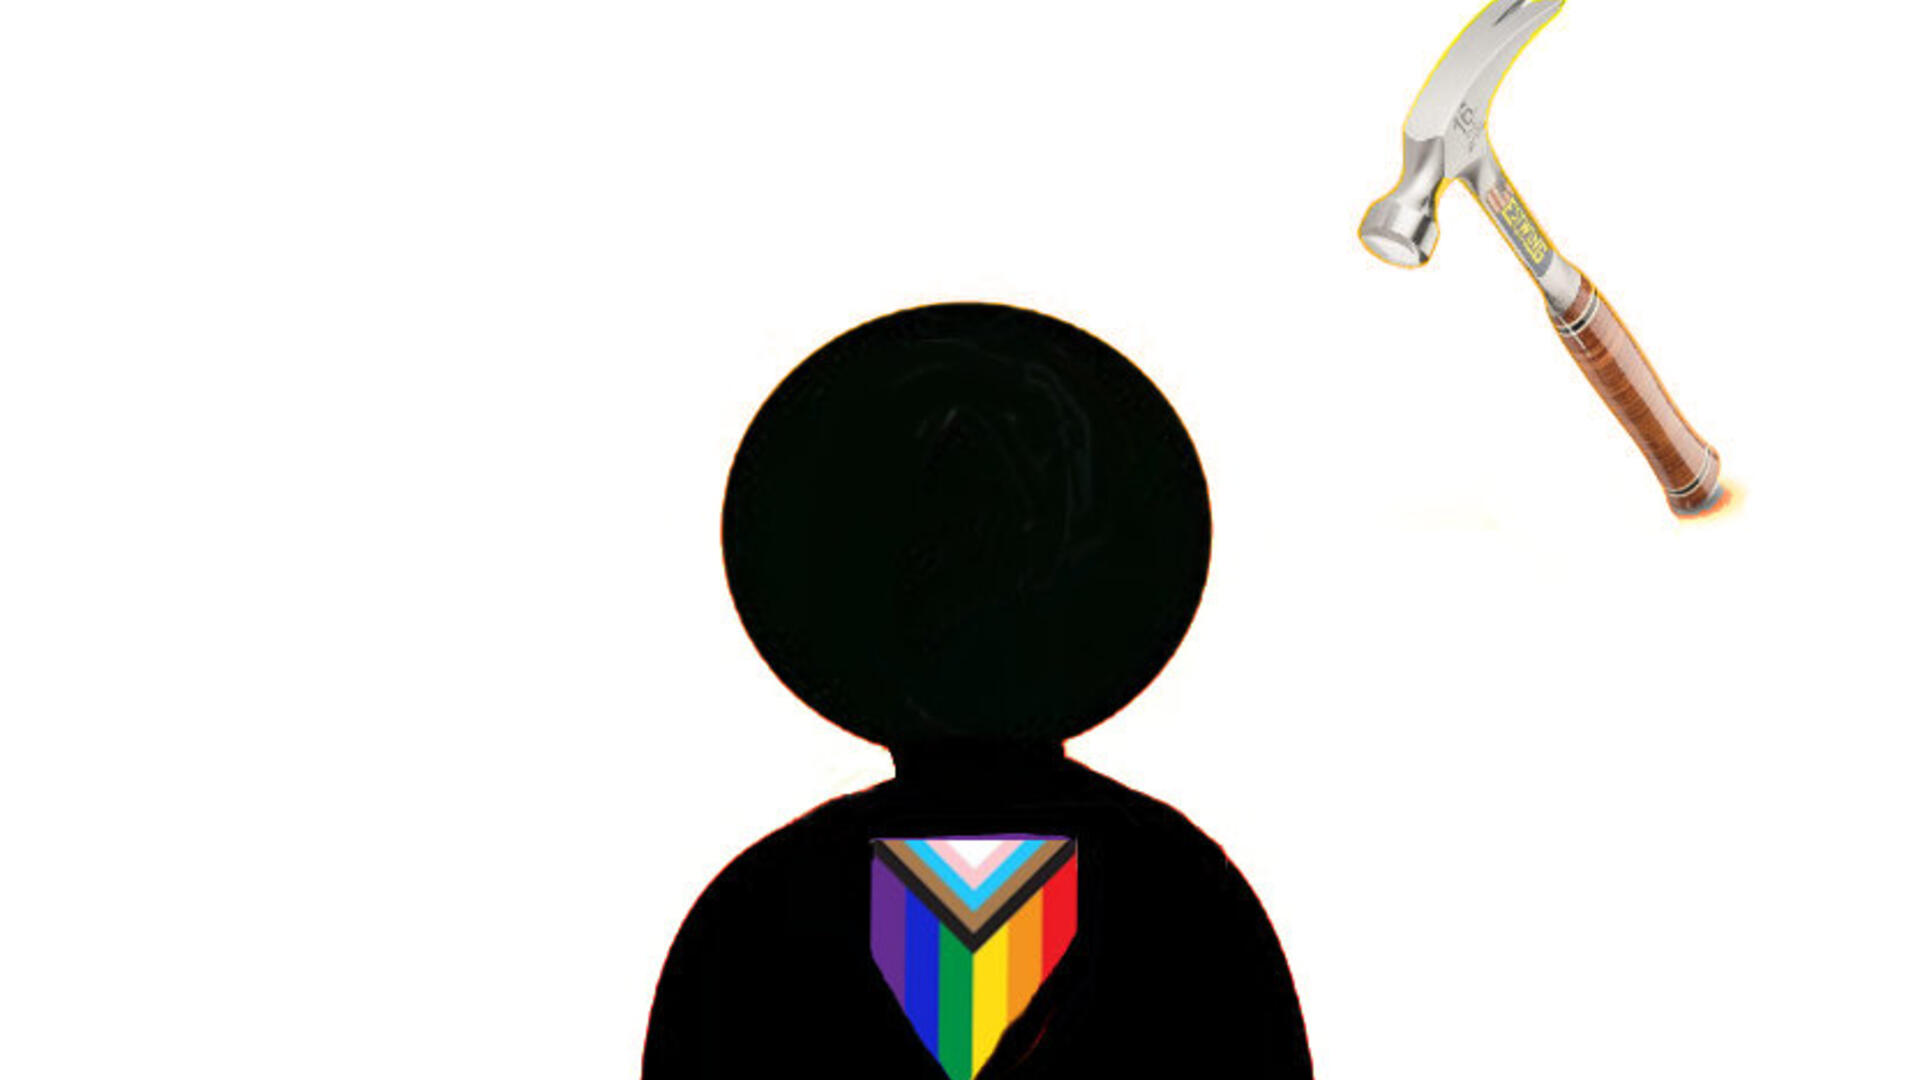 persoon met regenbooglogo op kleding die bedreigd wordt door hamer op achtergrond